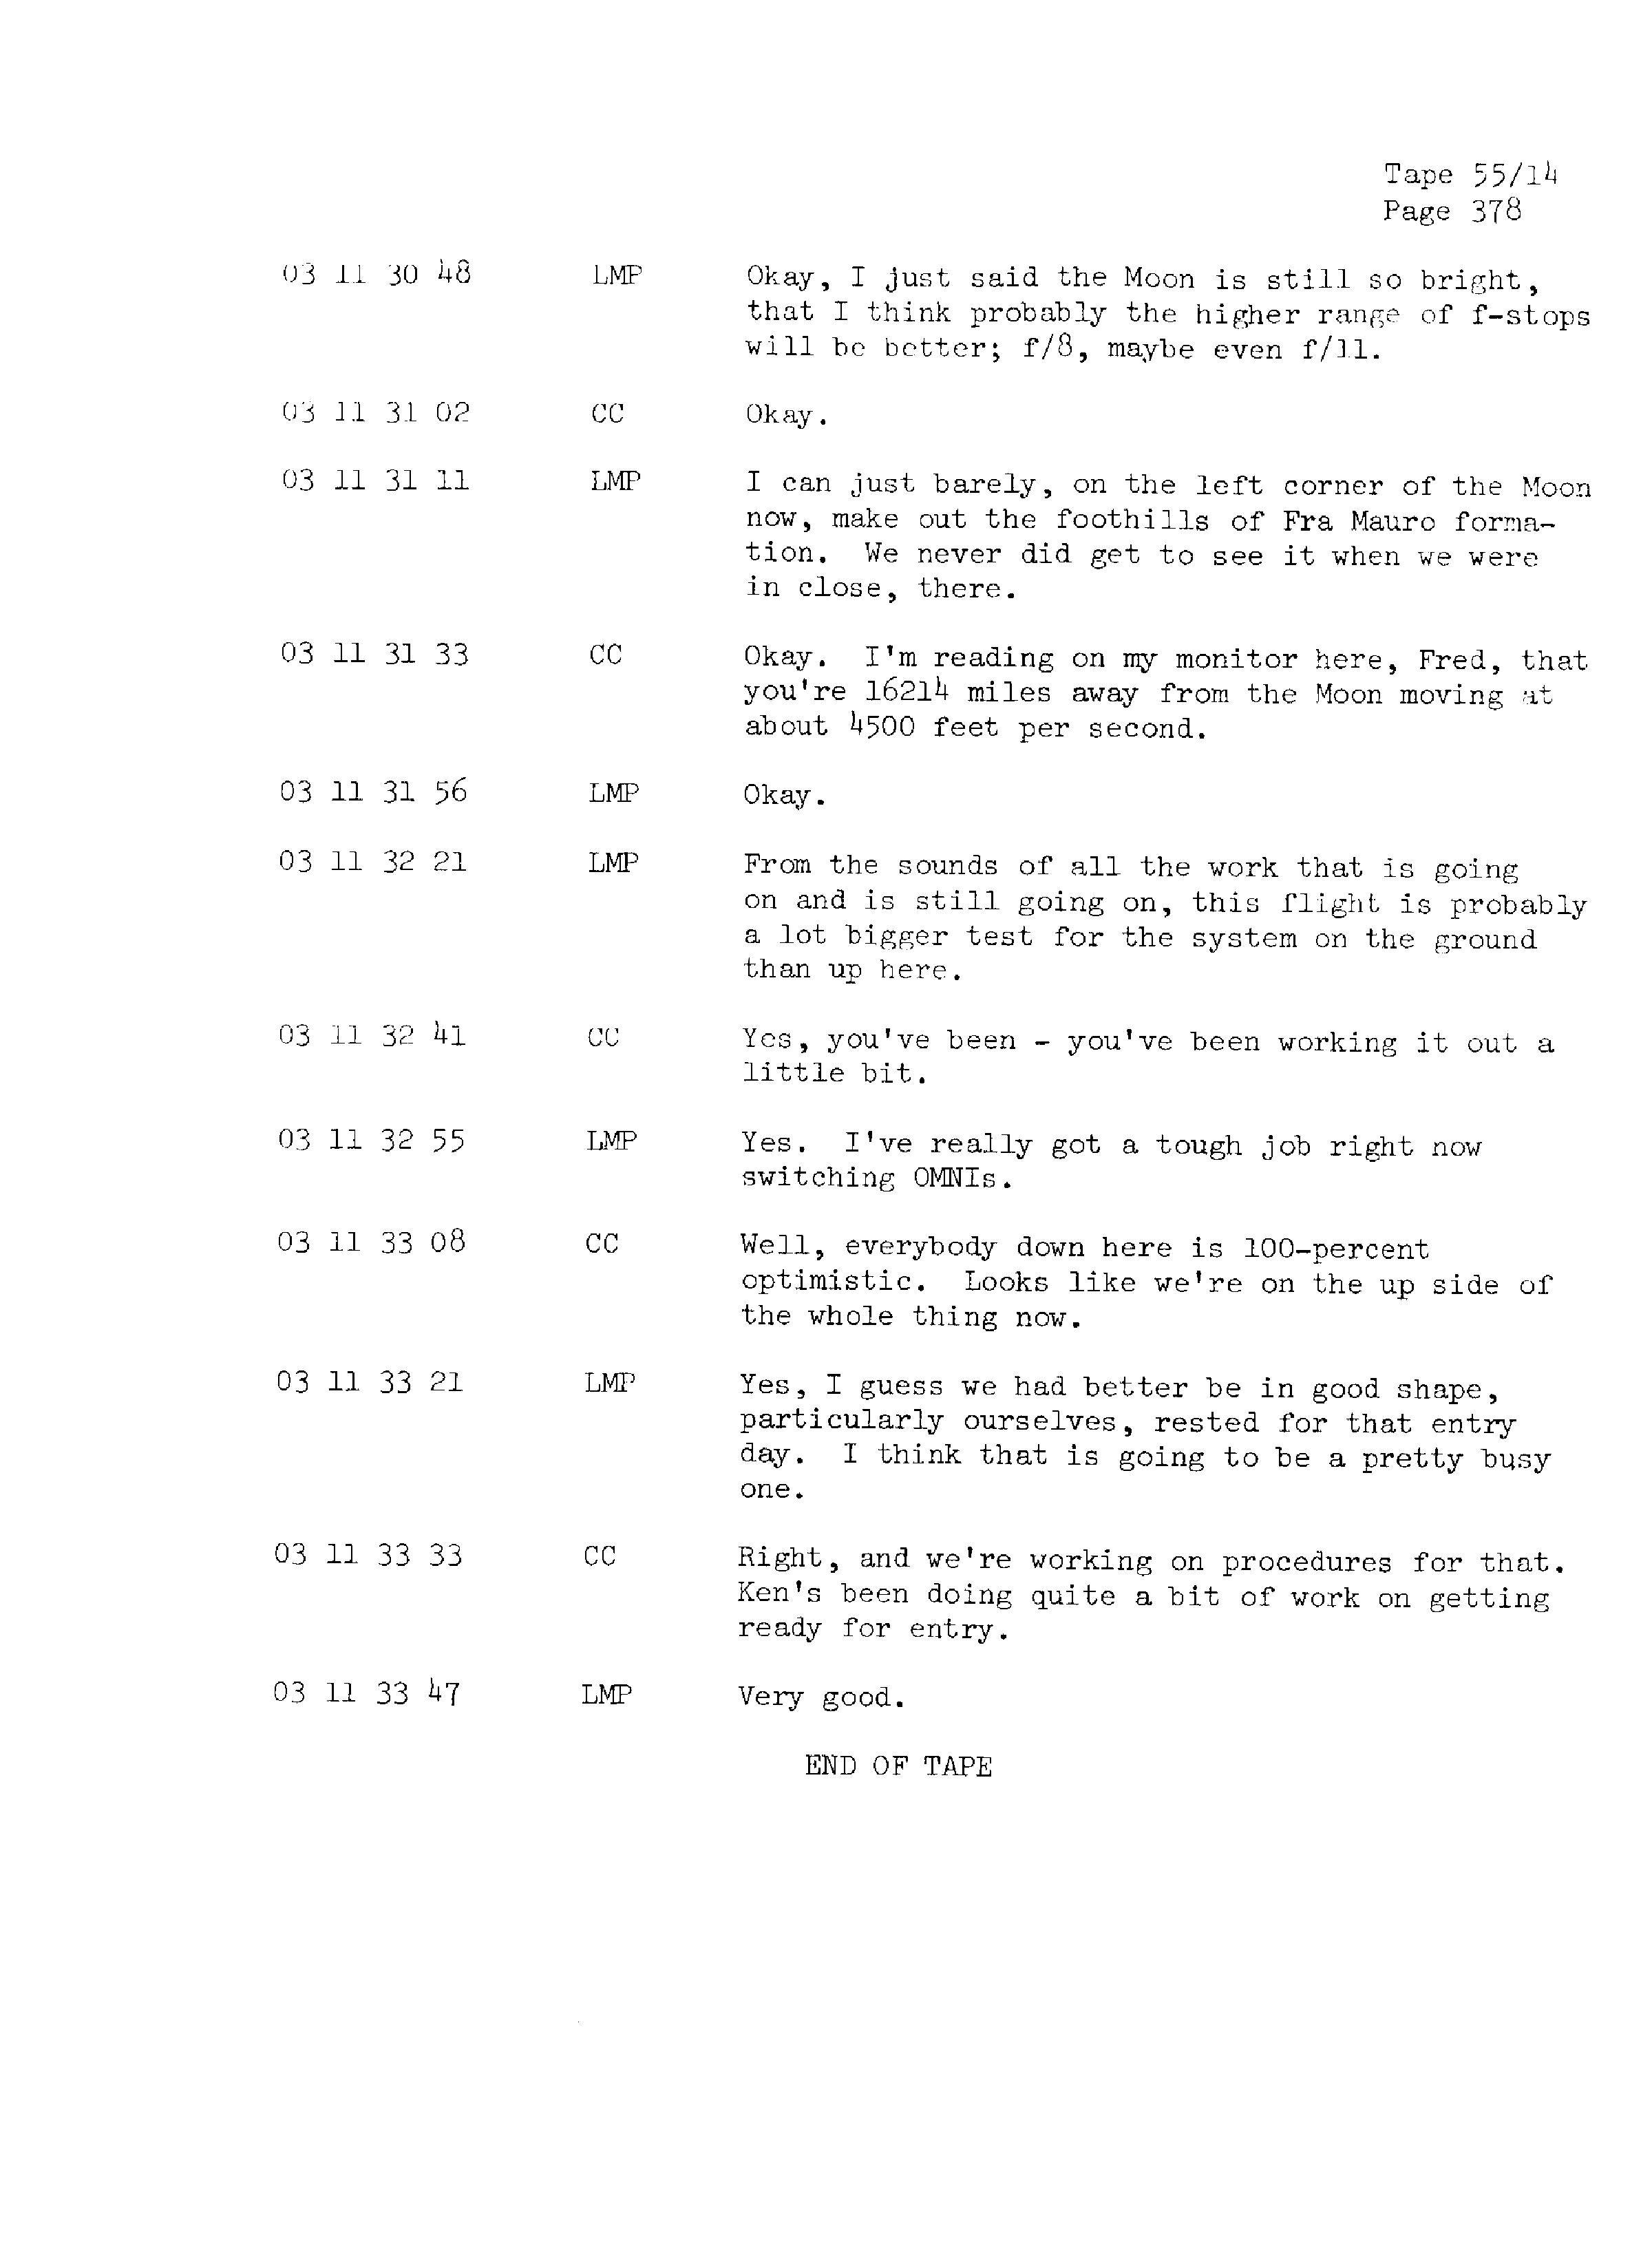 Page 385 of Apollo 13’s original transcript